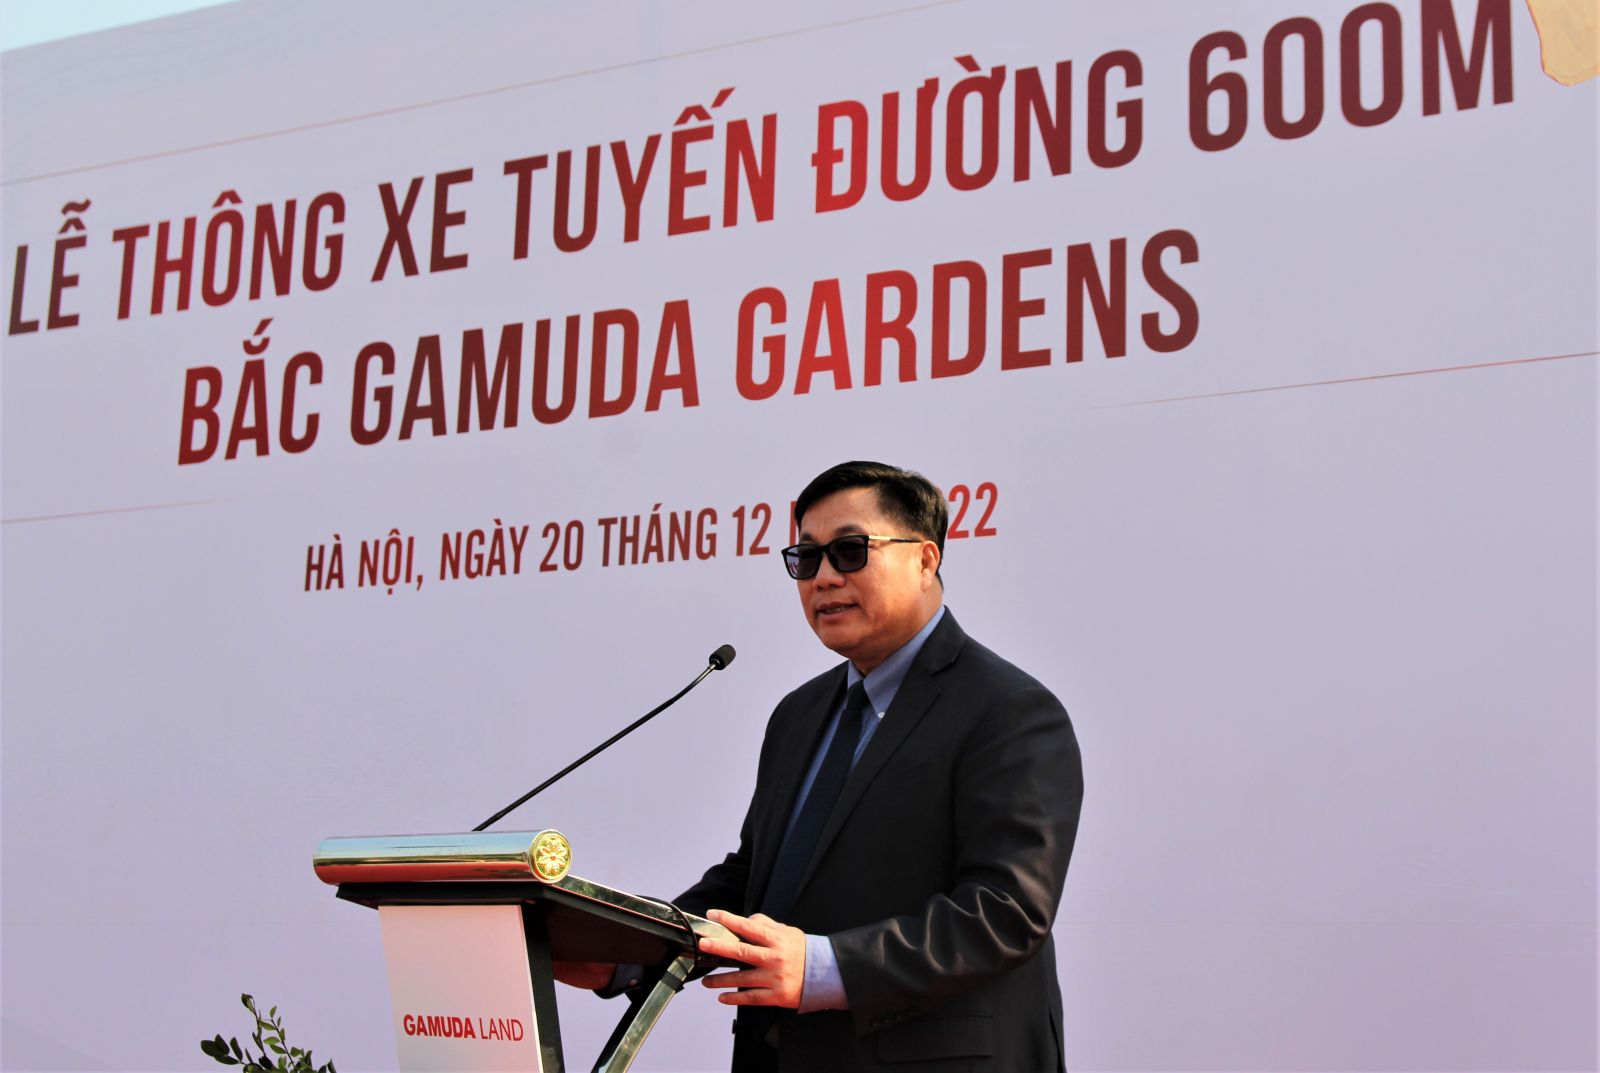 Ông Nguyễn Quang Hiếu – Bí thư Quận ủy Hoàng Mai phát biểu tại buổi lễ thông xe tuyến đường 600m phía Bắc Khu đô thị Gamuda Garden.